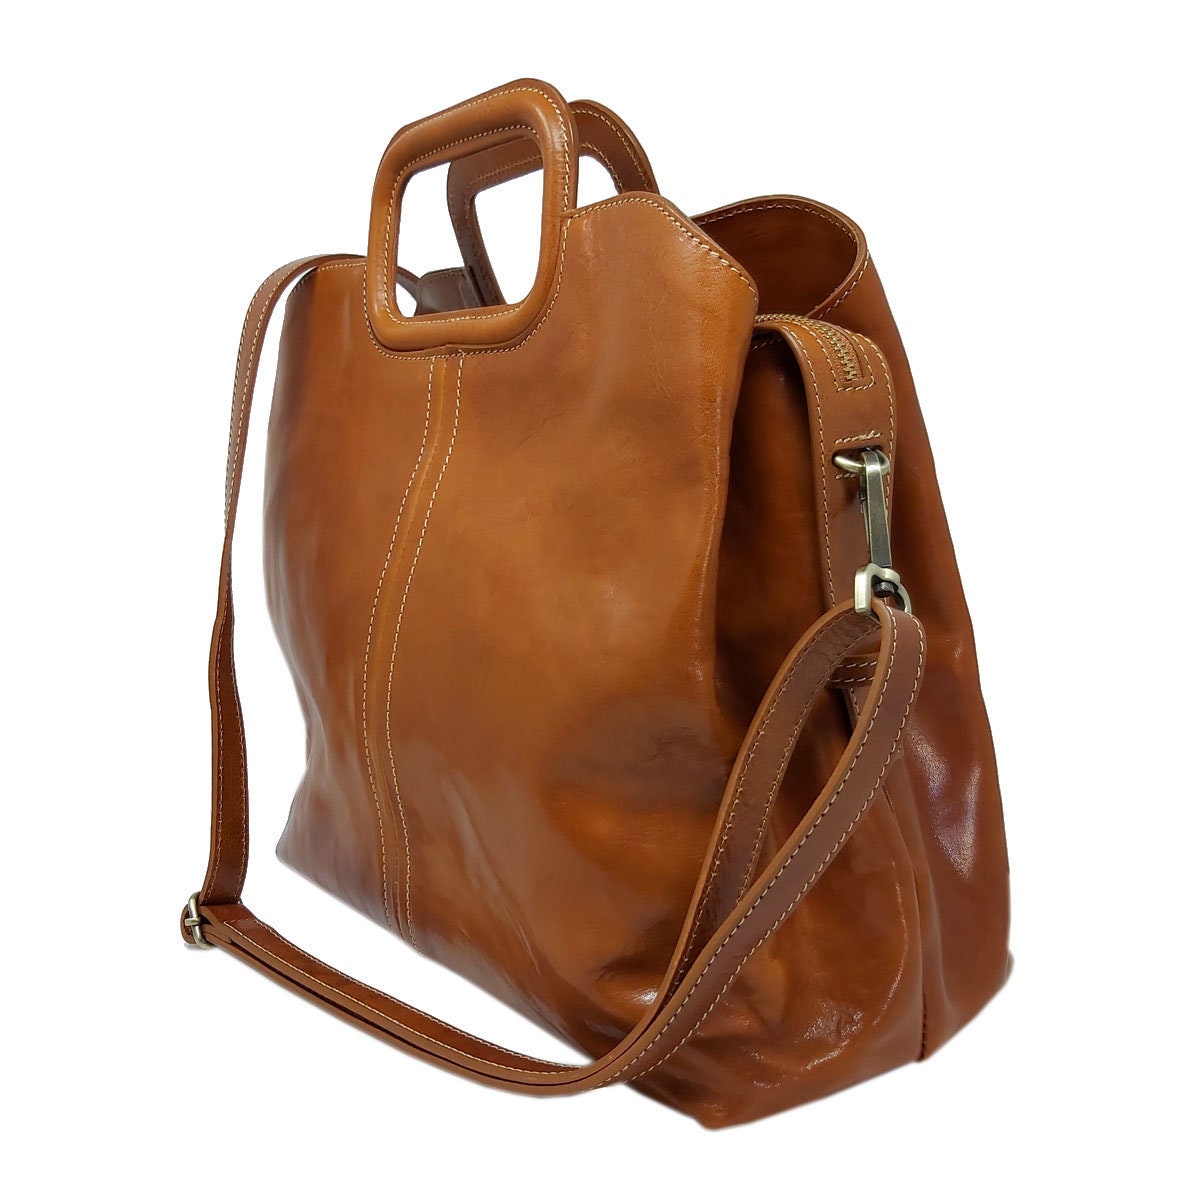 Genuine Leather Handbag with Shoulder Strap | Etsy